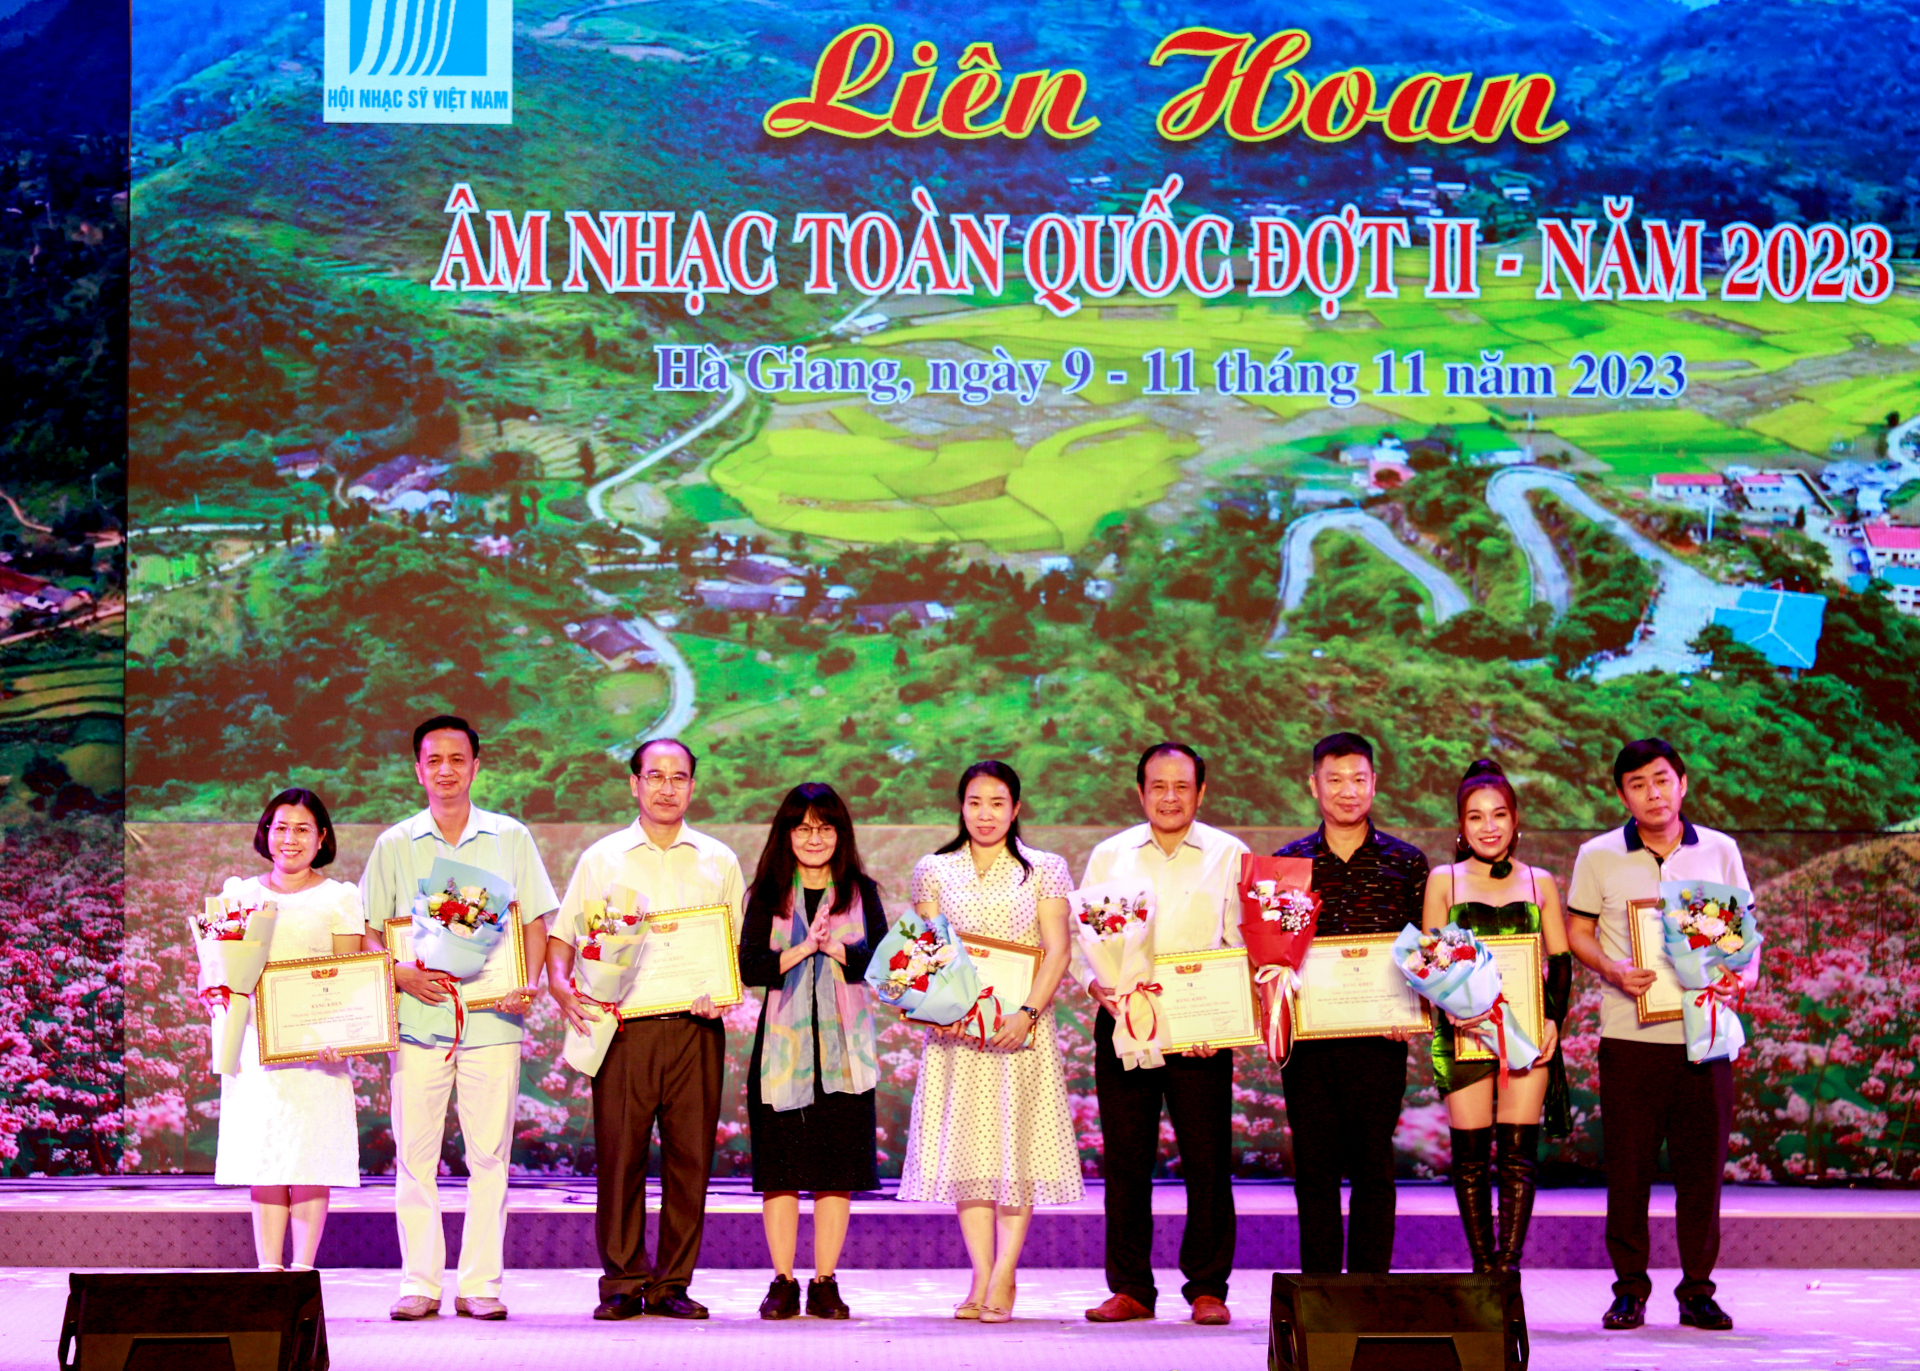 BTV Hội Nhạc sĩ Việt Nam tặng Bằng khen cho các tập thể và cá nhân có nhiều đóng góp trực tiếp, tích cực trong tham gia tổ chức Liên hoan âm nhạc toàn quốc đợt II, năm 2023.